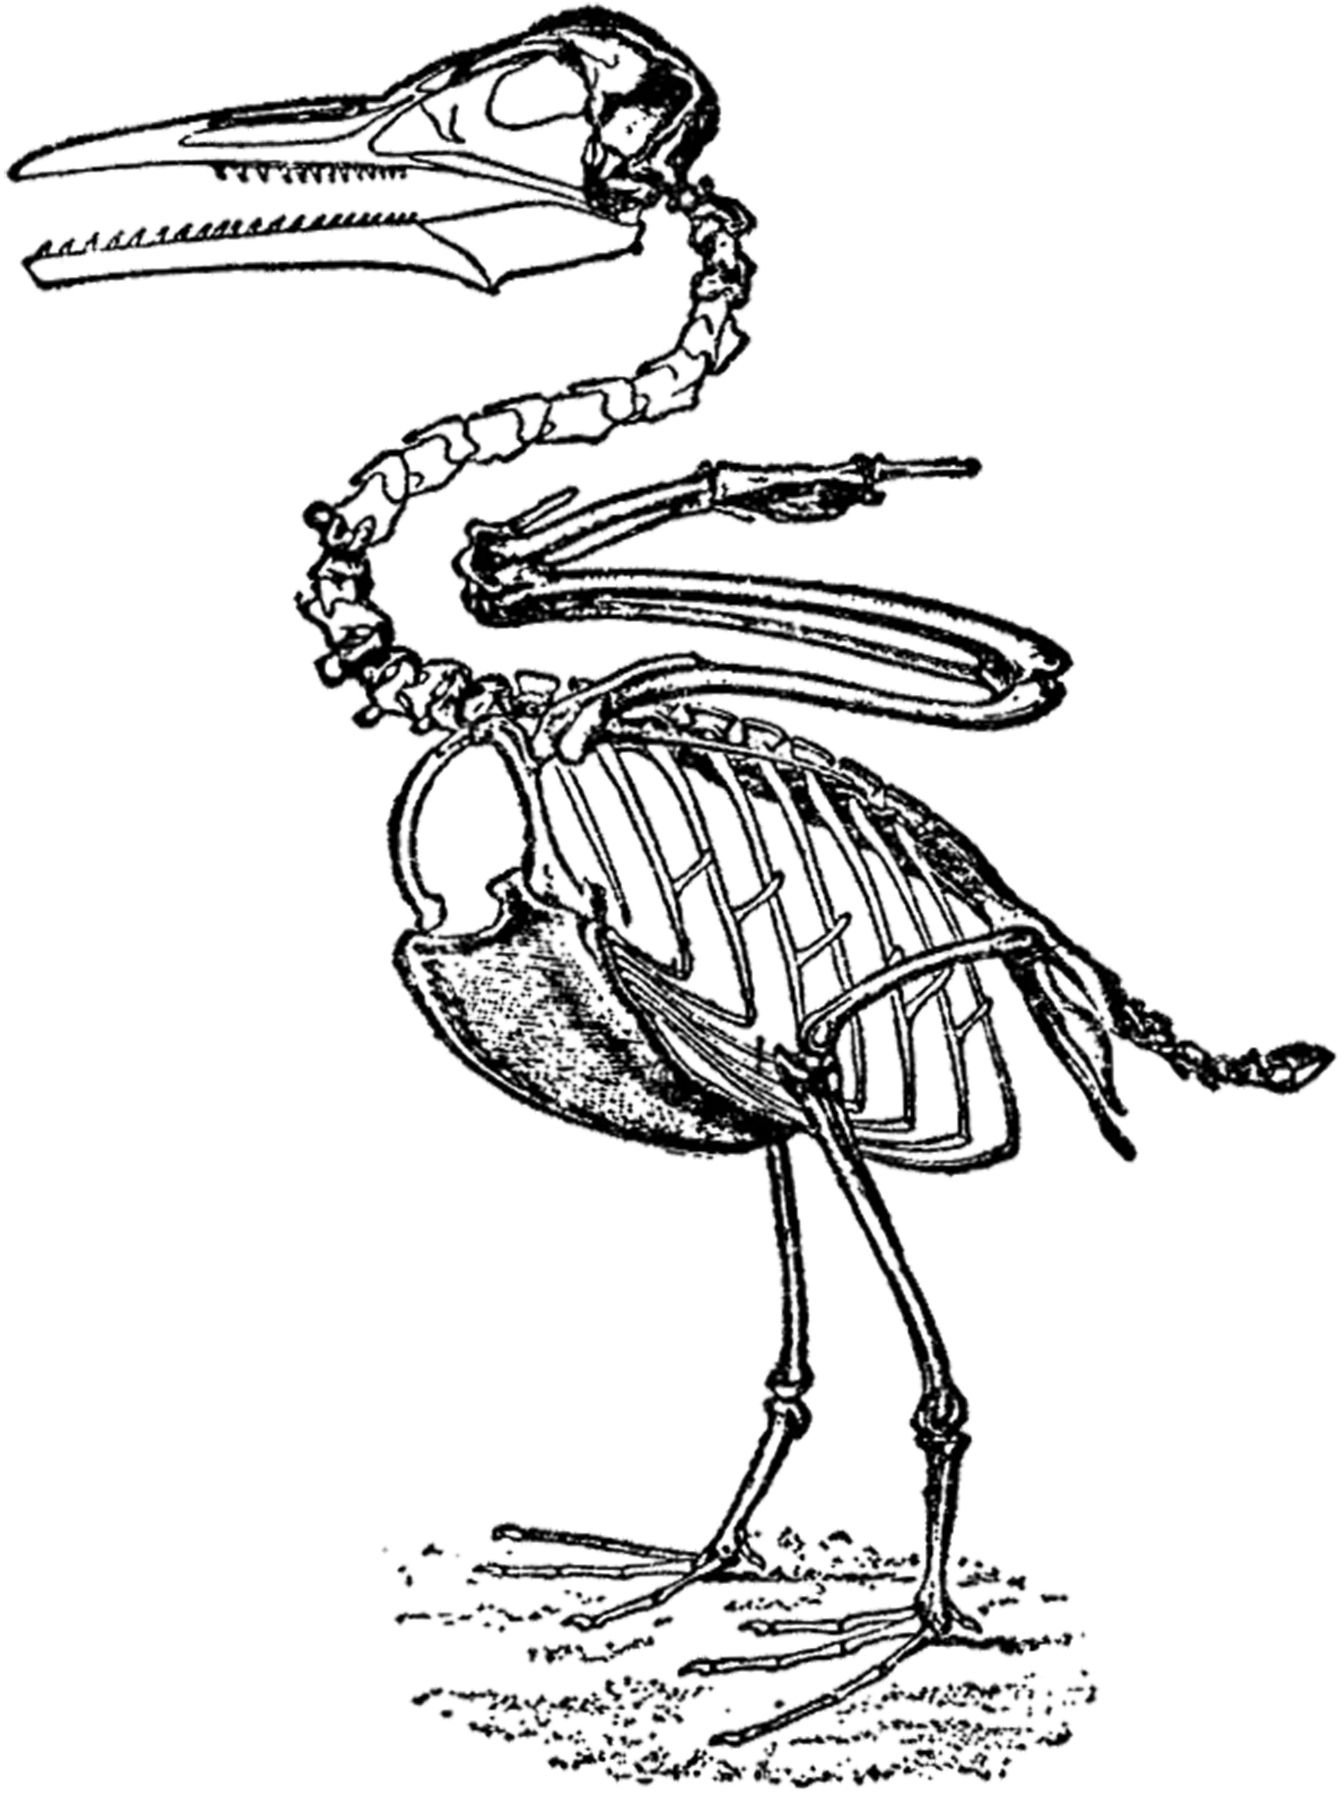 Исследование особенностей скелета птицы лабораторная работа 8